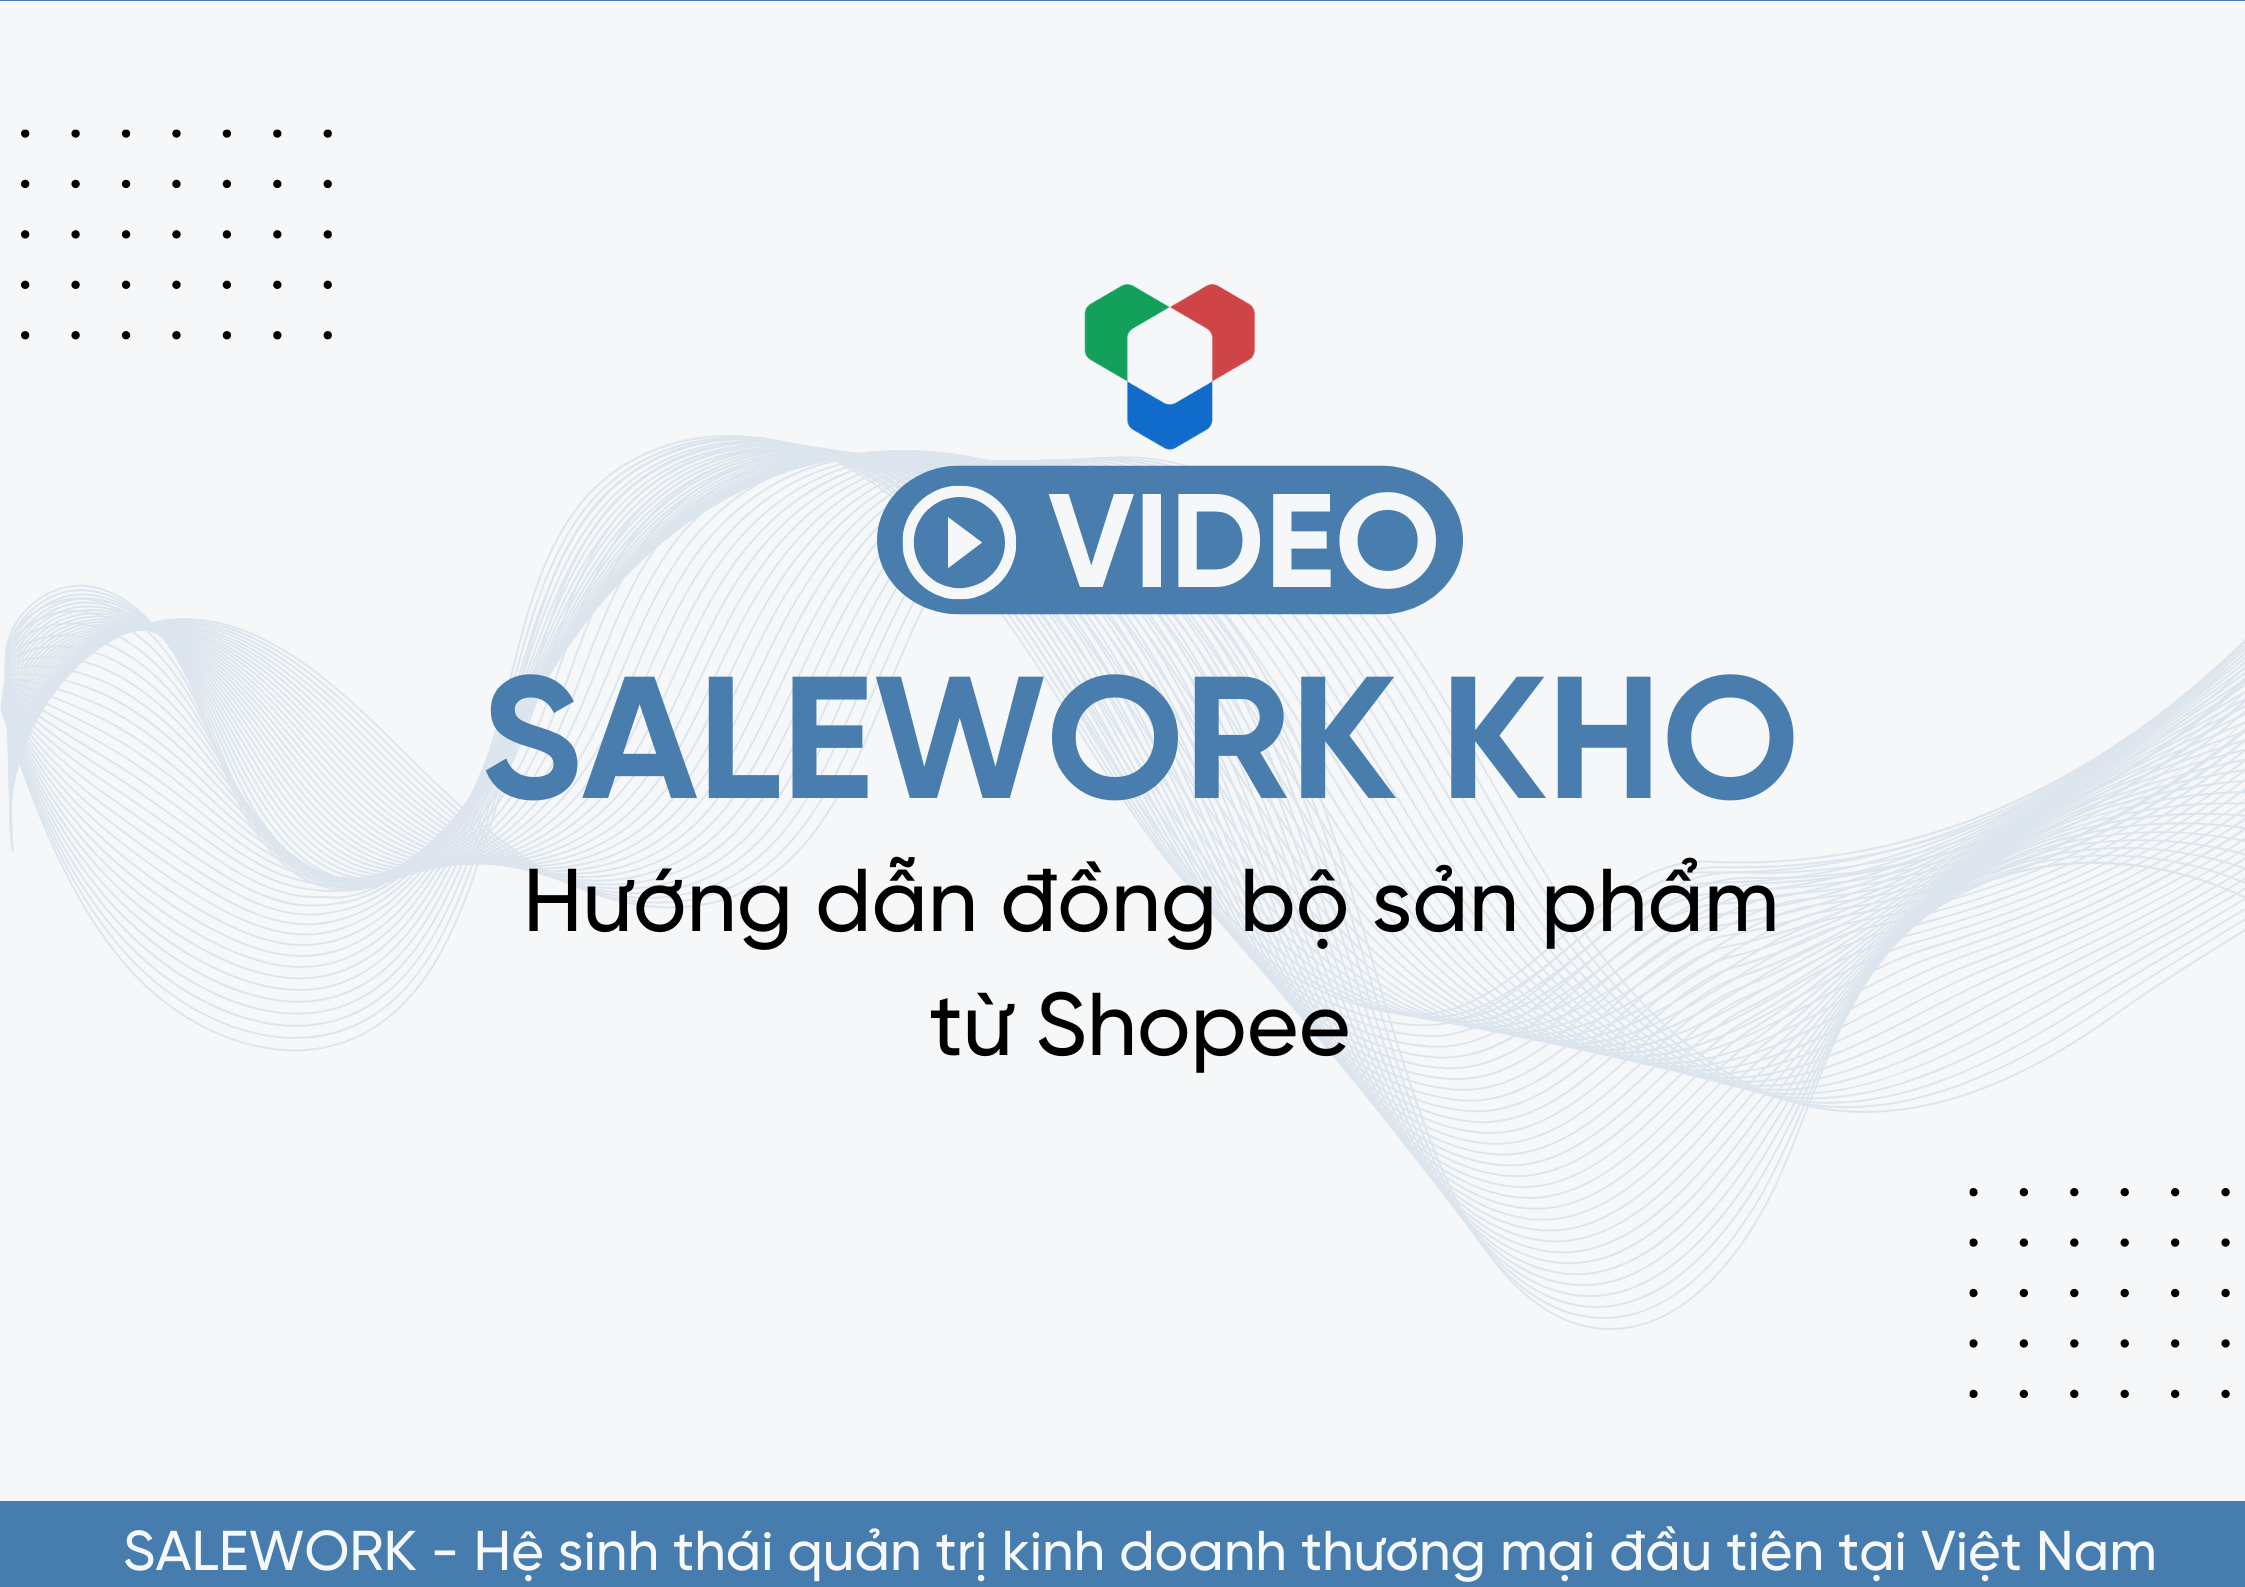 [VIDEO] Hướng dẫn đồng bộ sản phẩm từ Shopee về Salework Kho - 12